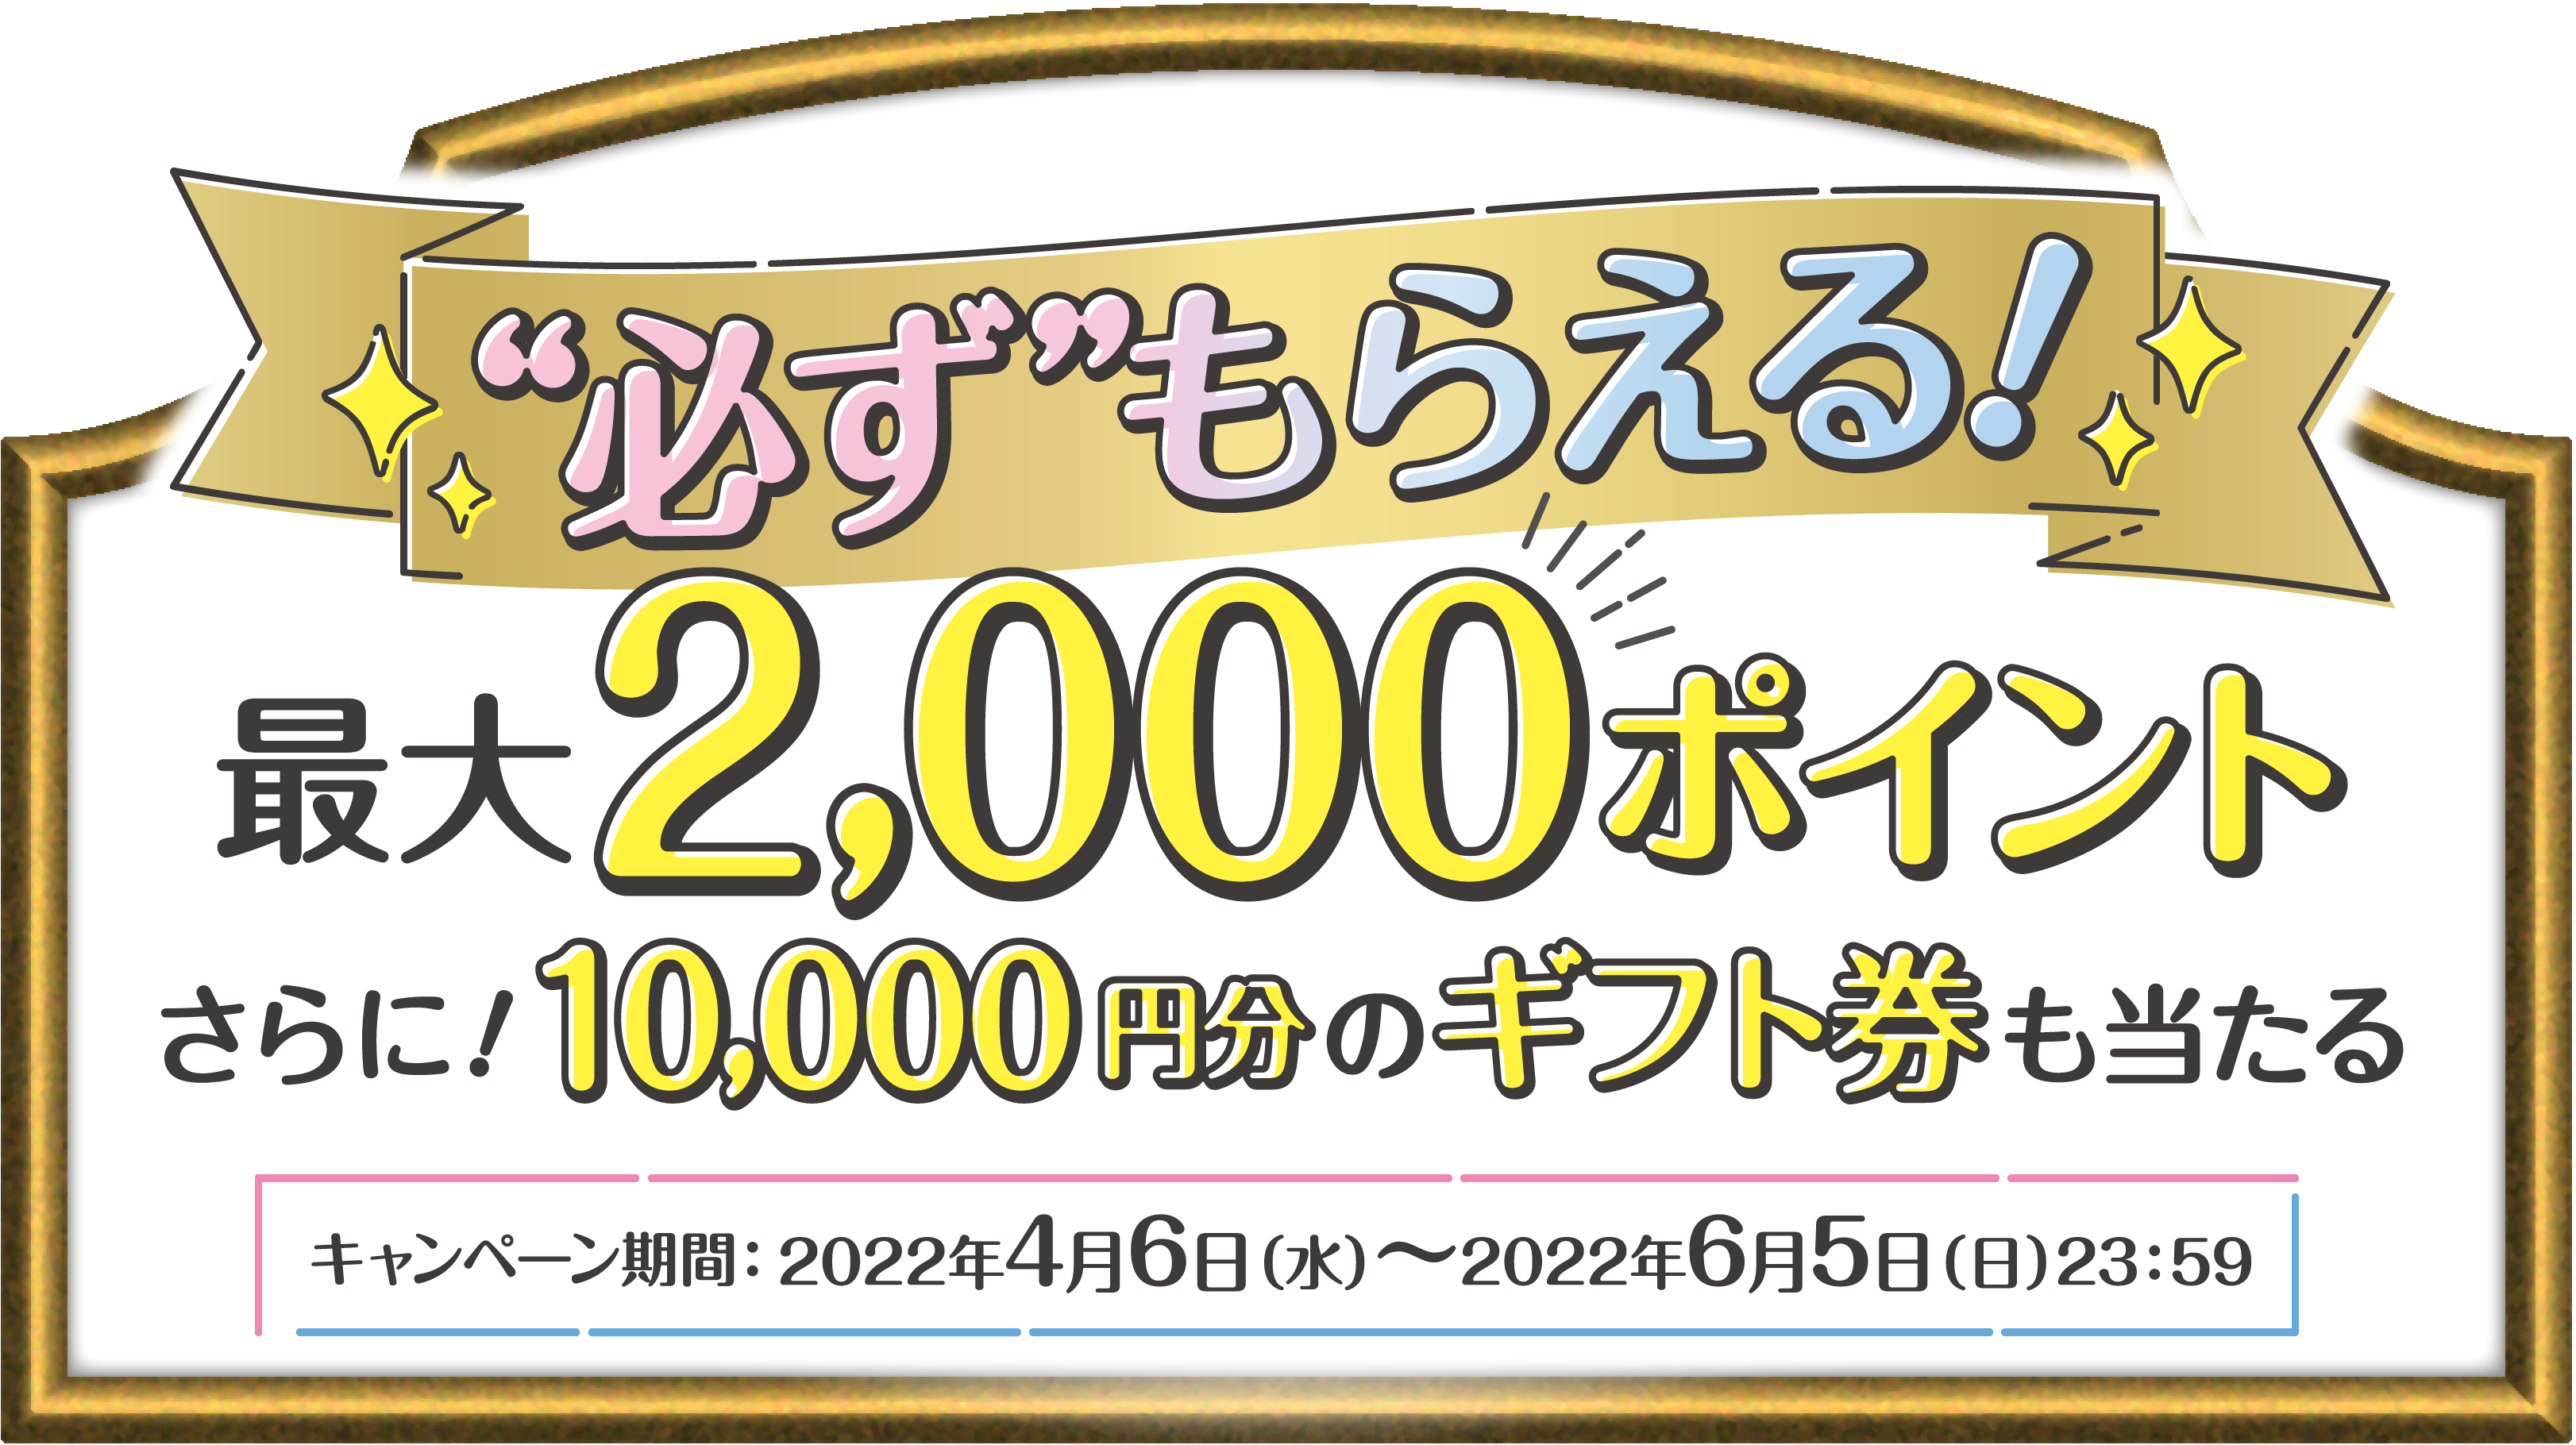 必ずもらえる!最大2,000ポイントさらに!10,000円分のギフト券も当たる キャンペーン期間:2022年4月6日(水)〜2022年6月5日(日)23:59